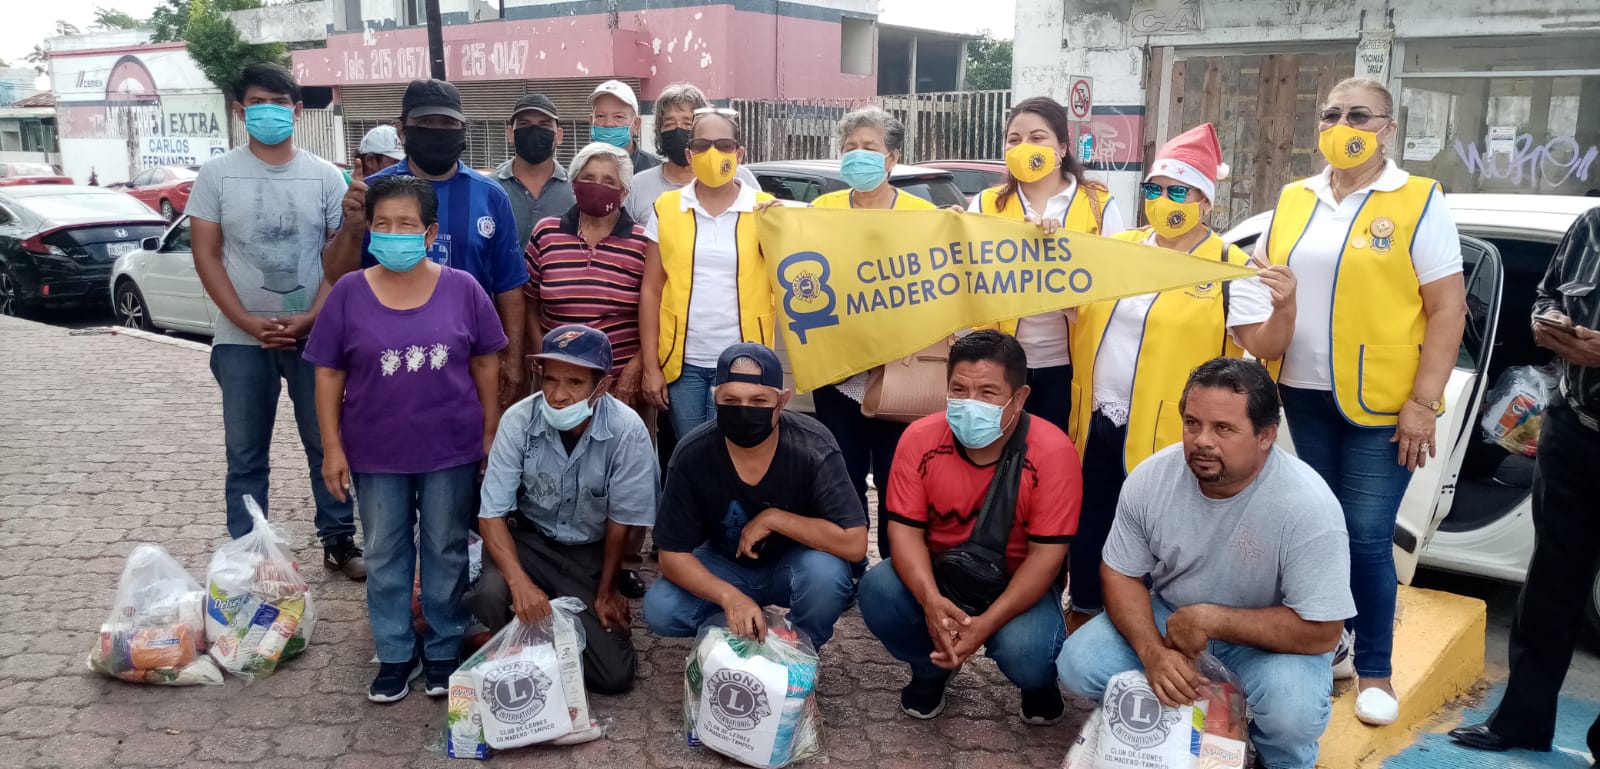 Club social entrega despensas a boleros de Madero | EnLí